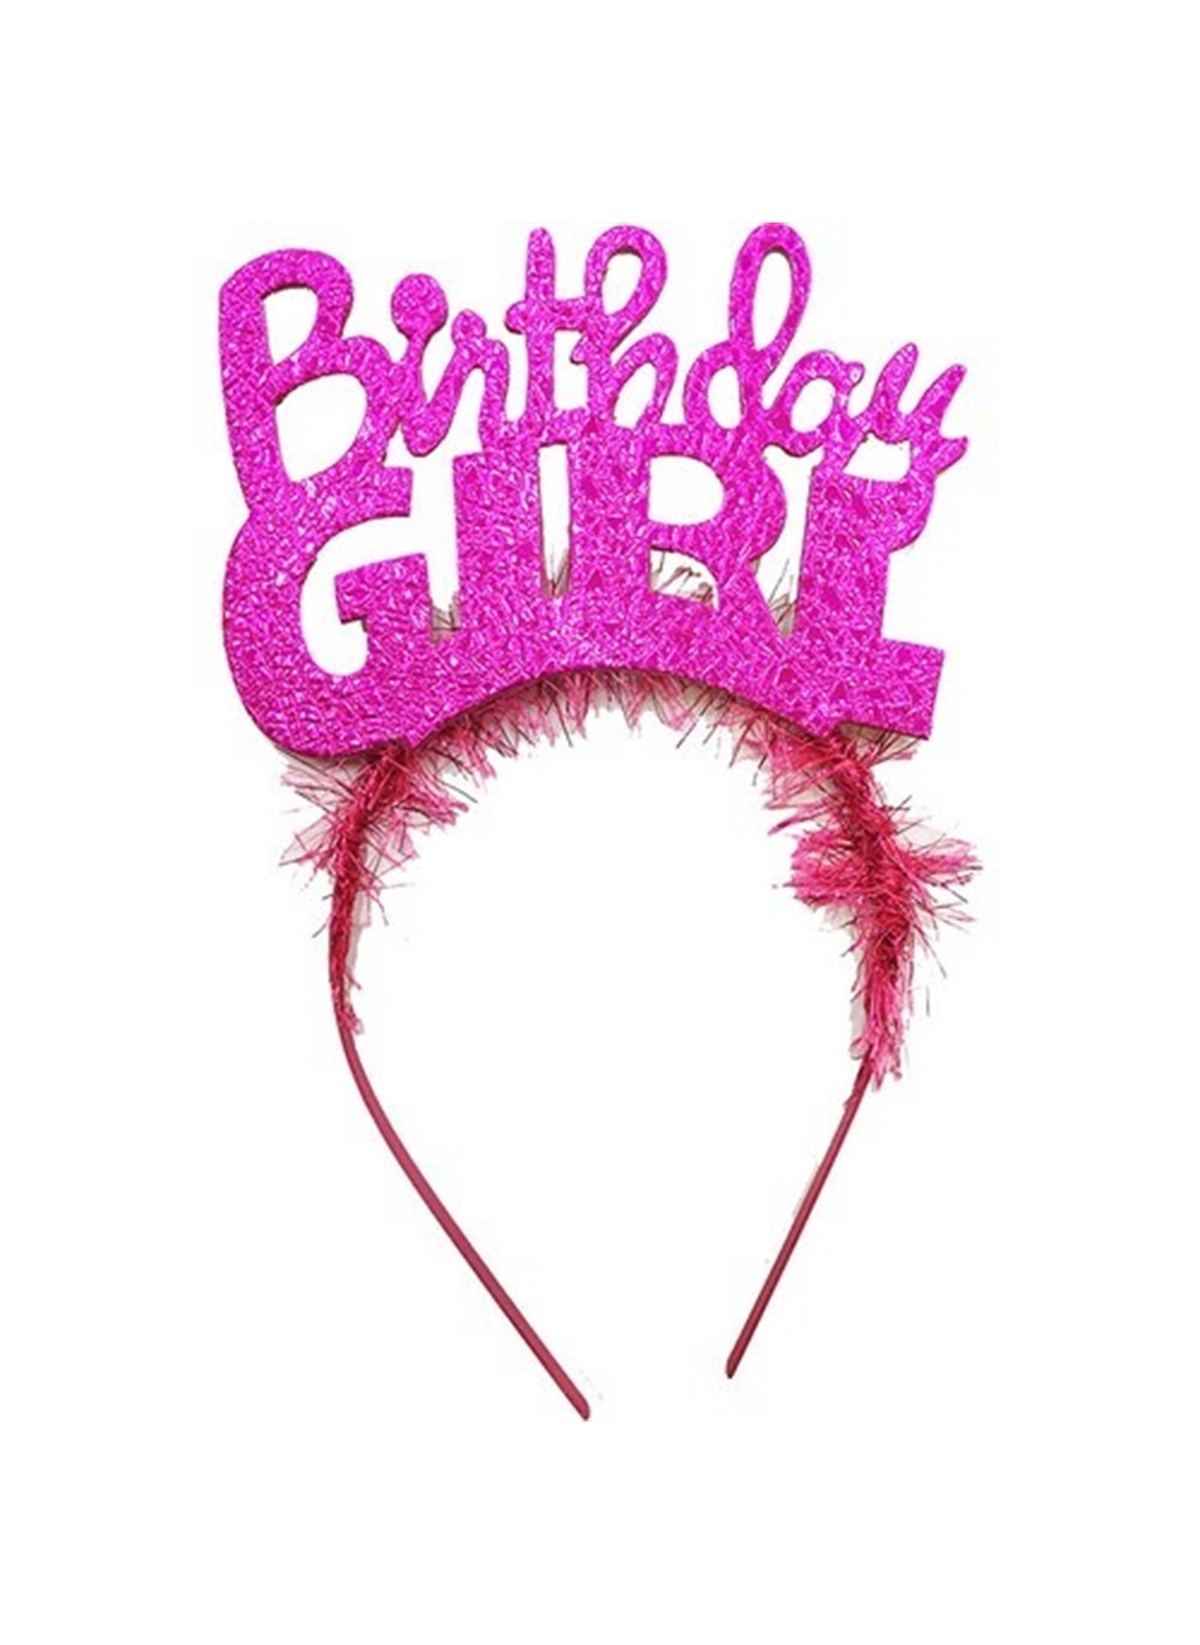 Birthday Girl Yazılı Fuşya Renk Parti Kızı Doğum Günü Tacı